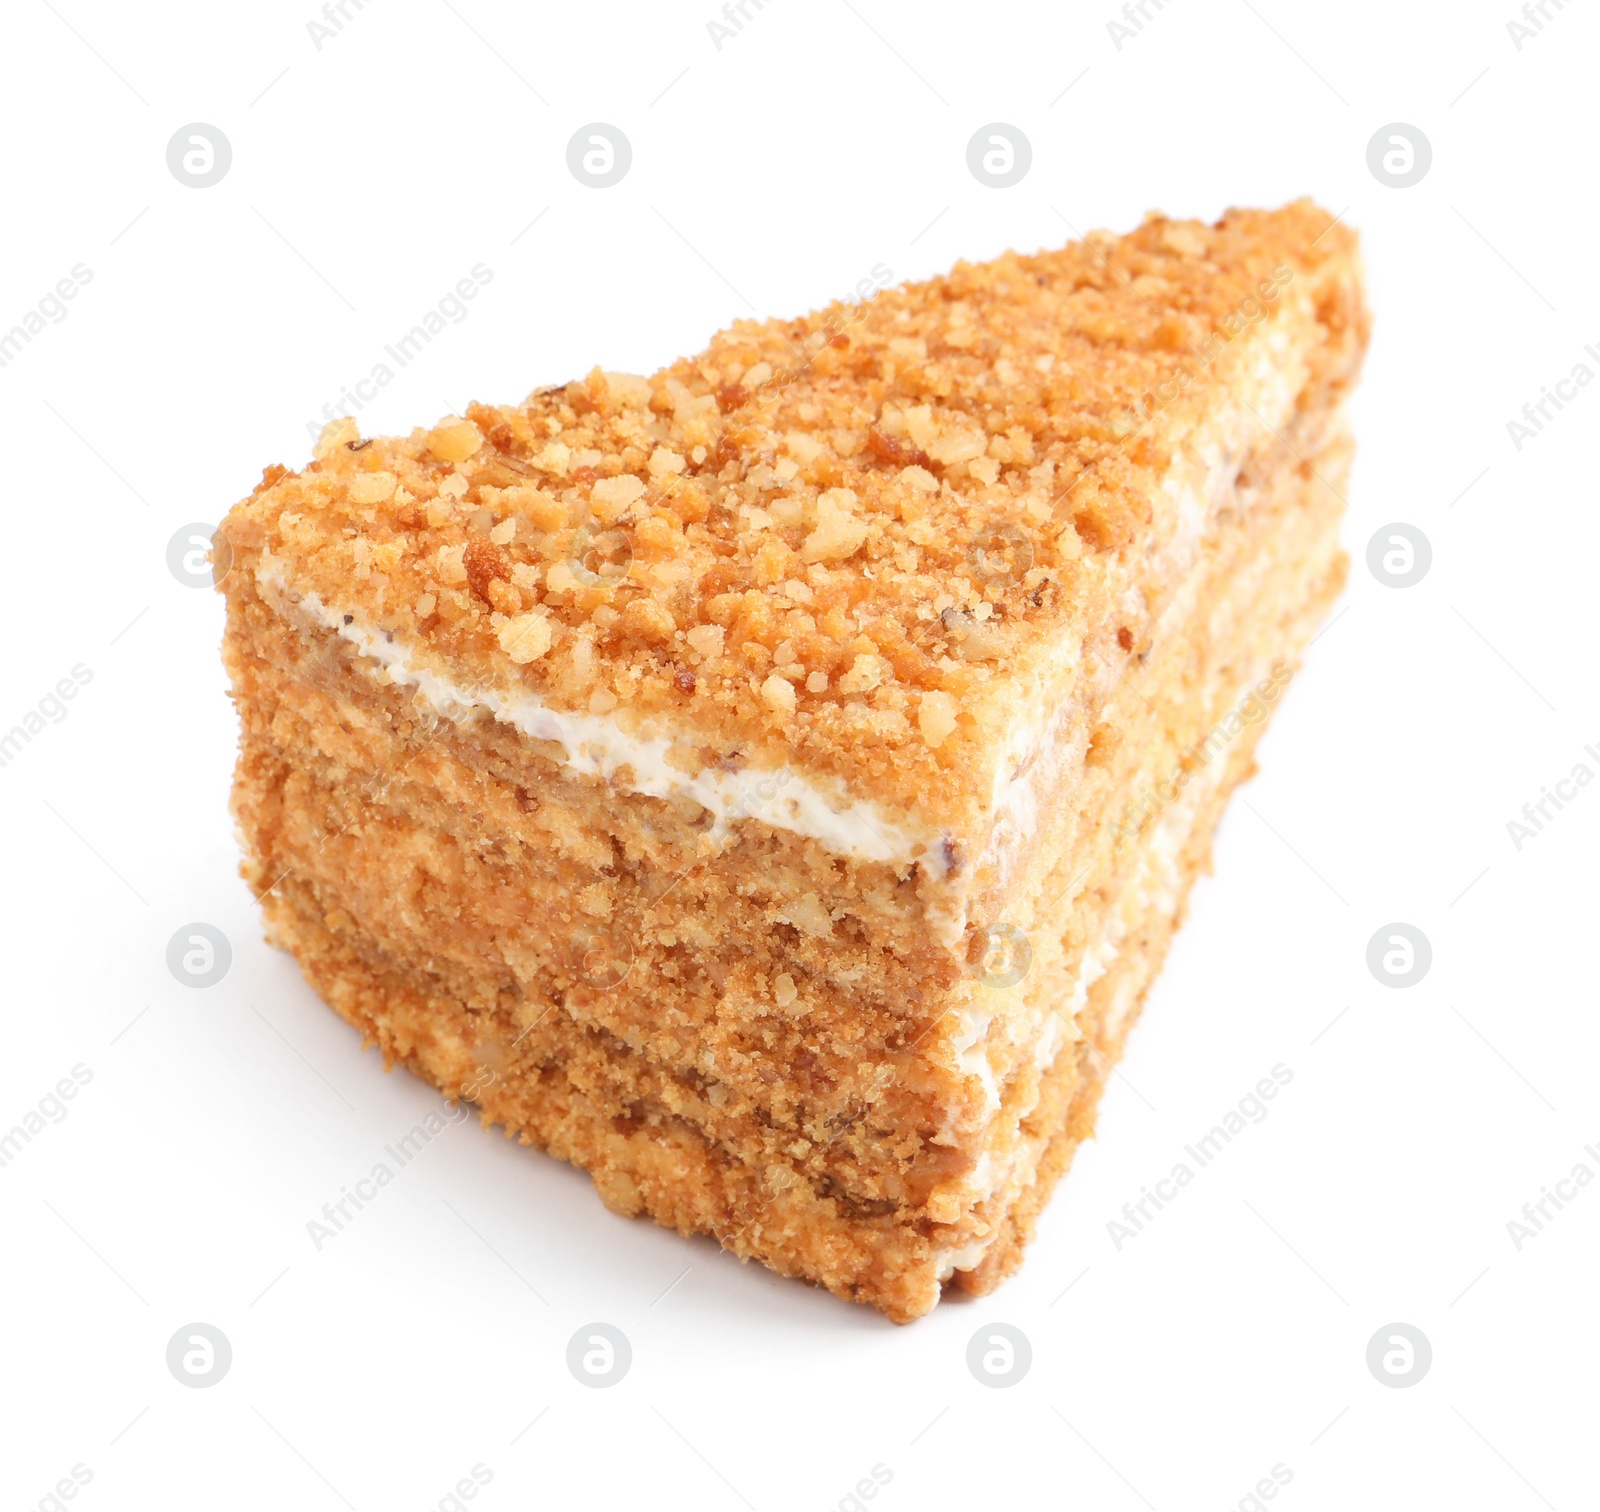 Photo of Slice of delicious honey cake isolated on white